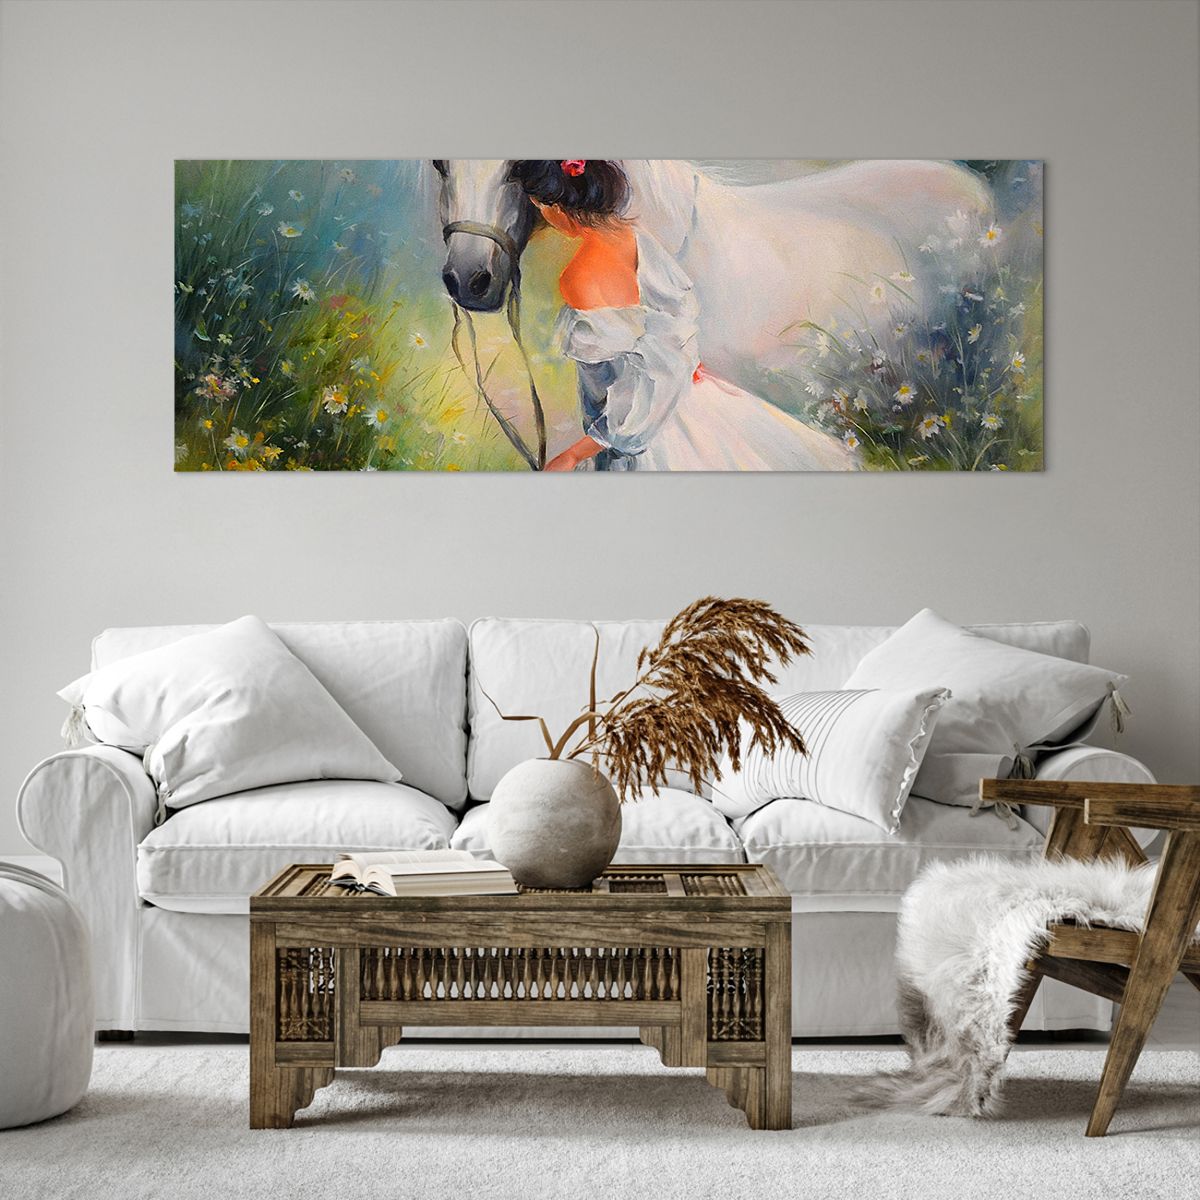 Bild auf Leinwand Frau, Bild auf Leinwand Pferd, Bild auf Leinwand Wiese, Bild auf Leinwand Blumen, Bild auf Leinwand Kunst